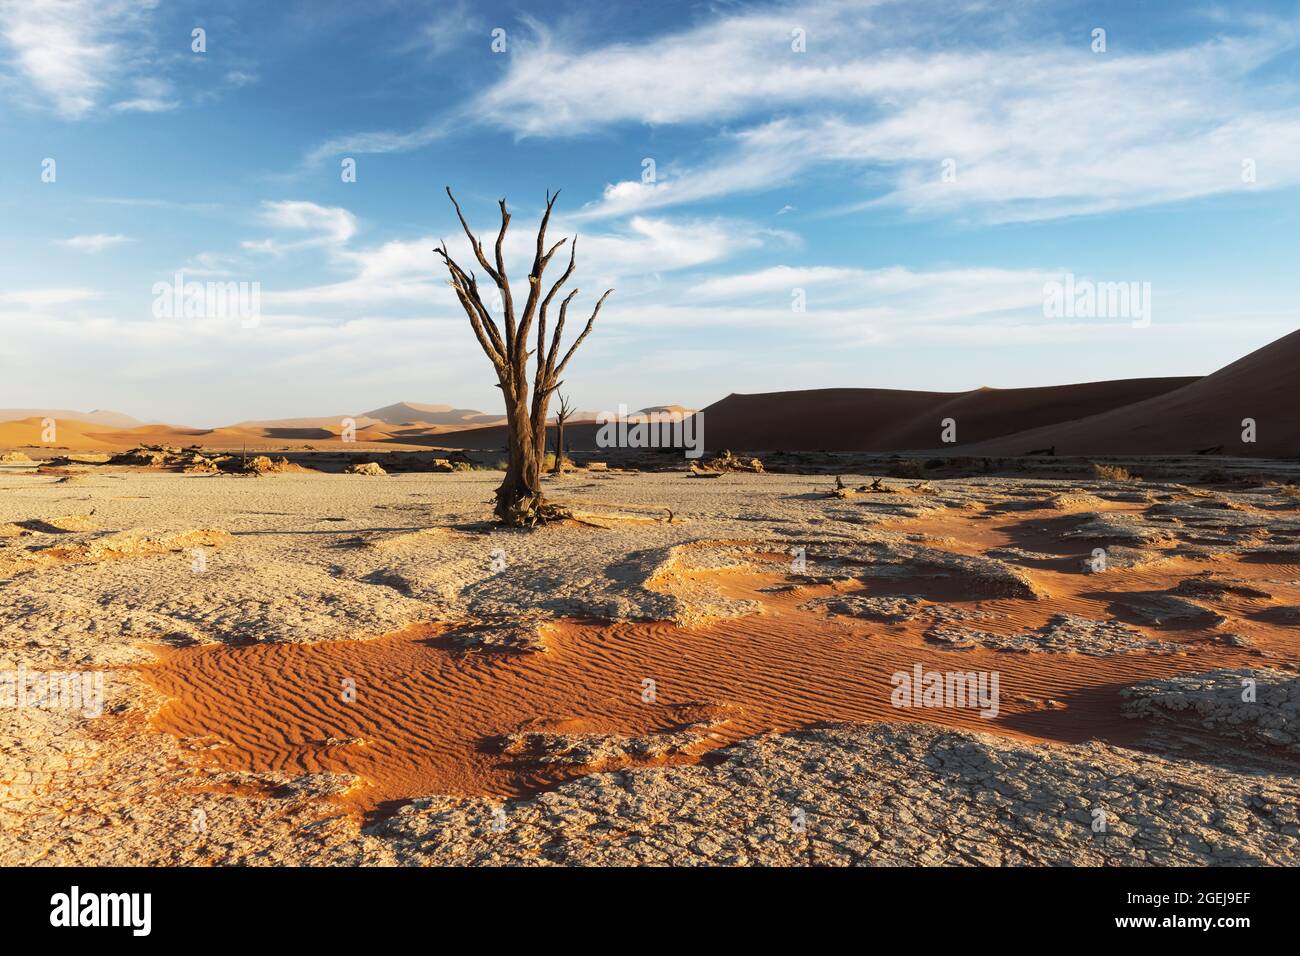 Arbres Camelthorn morts au lever du soleil, Deadvlei, parc national Namib-Naukluft, Namibie, Afrique. Arbres séchés dans le désert du Namib. Photographie de paysage Banque D'Images